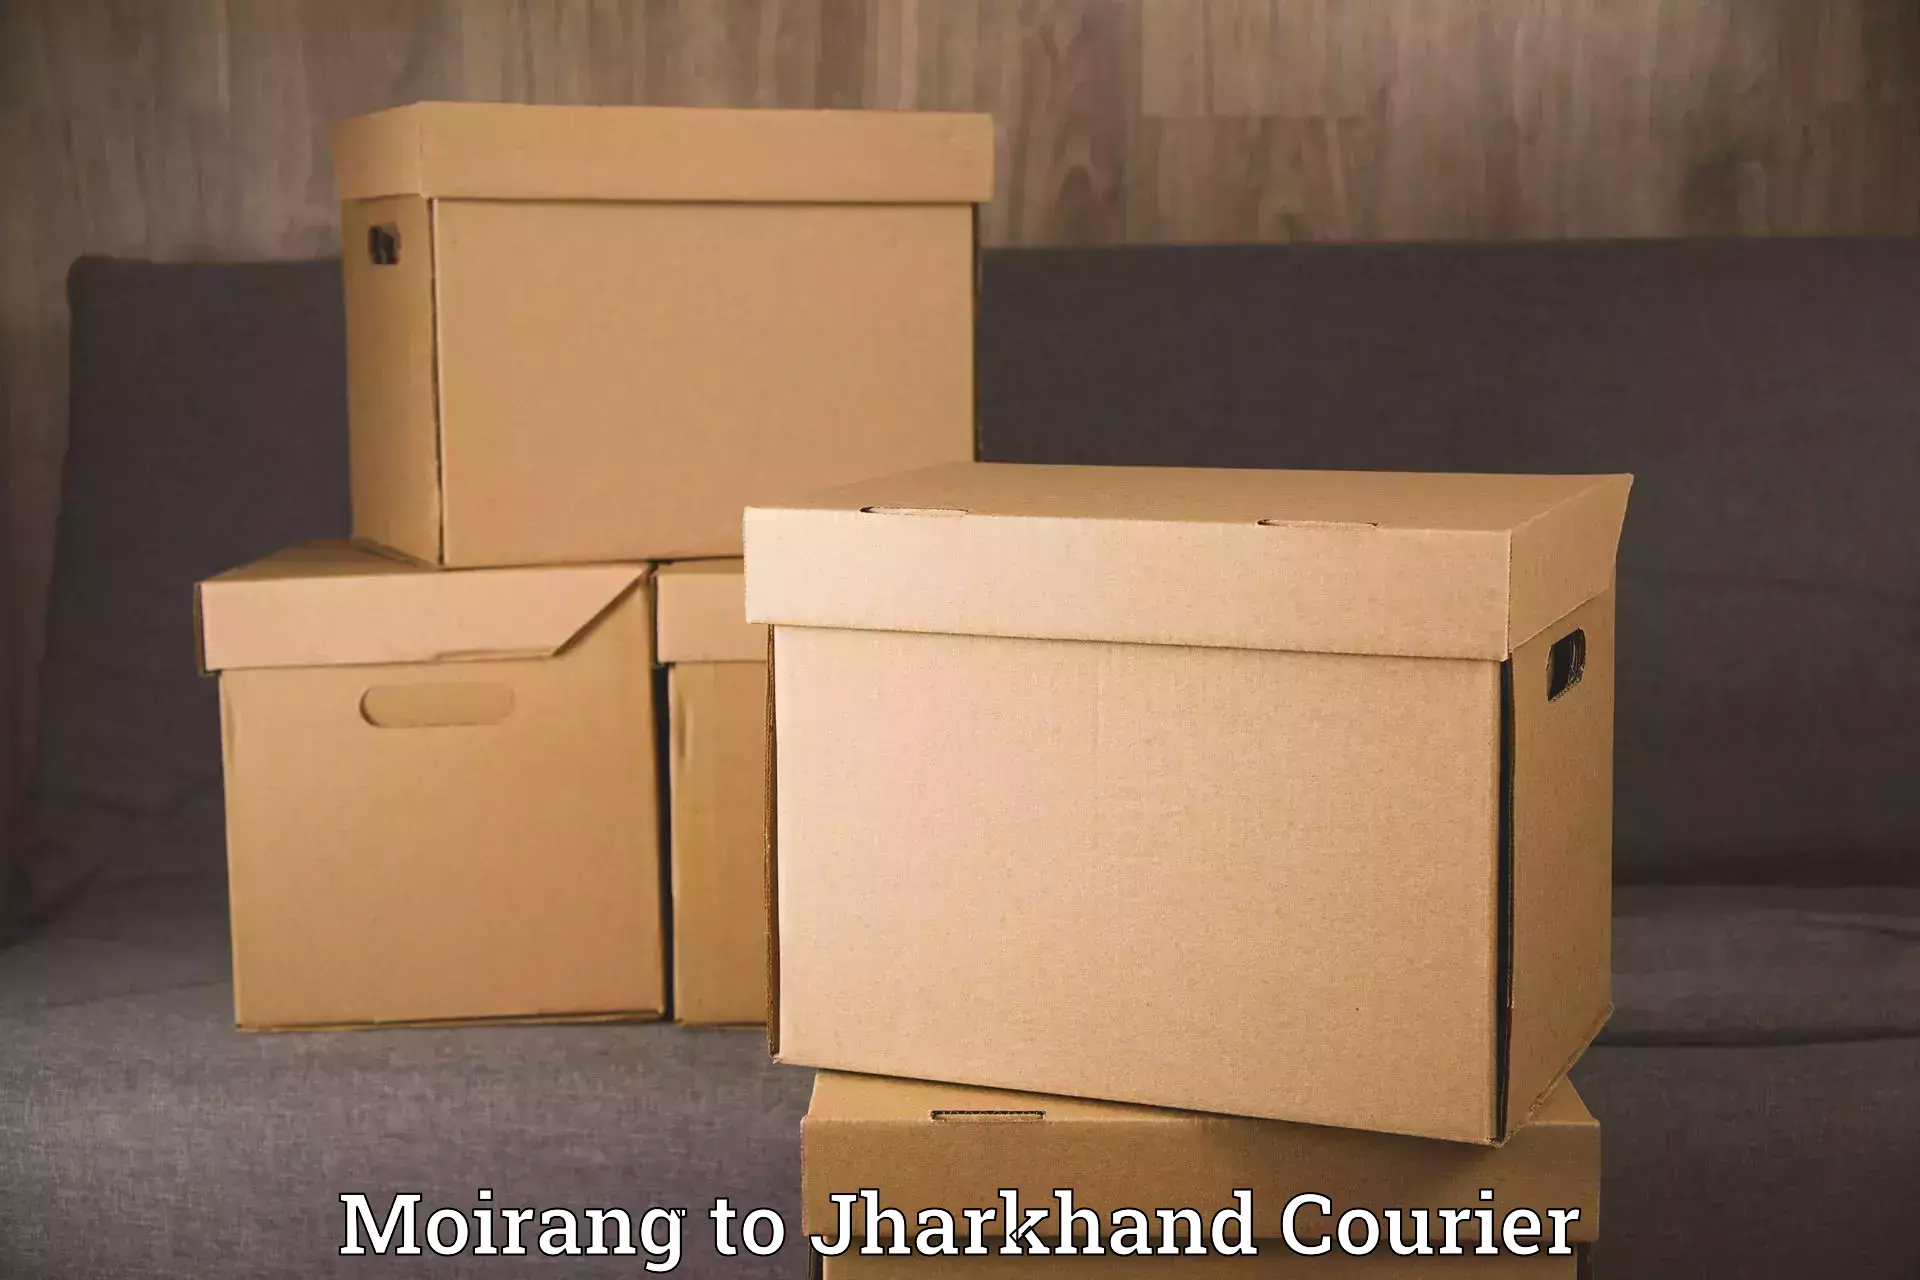 Nationwide furniture transport Moirang to Bero Ranchi